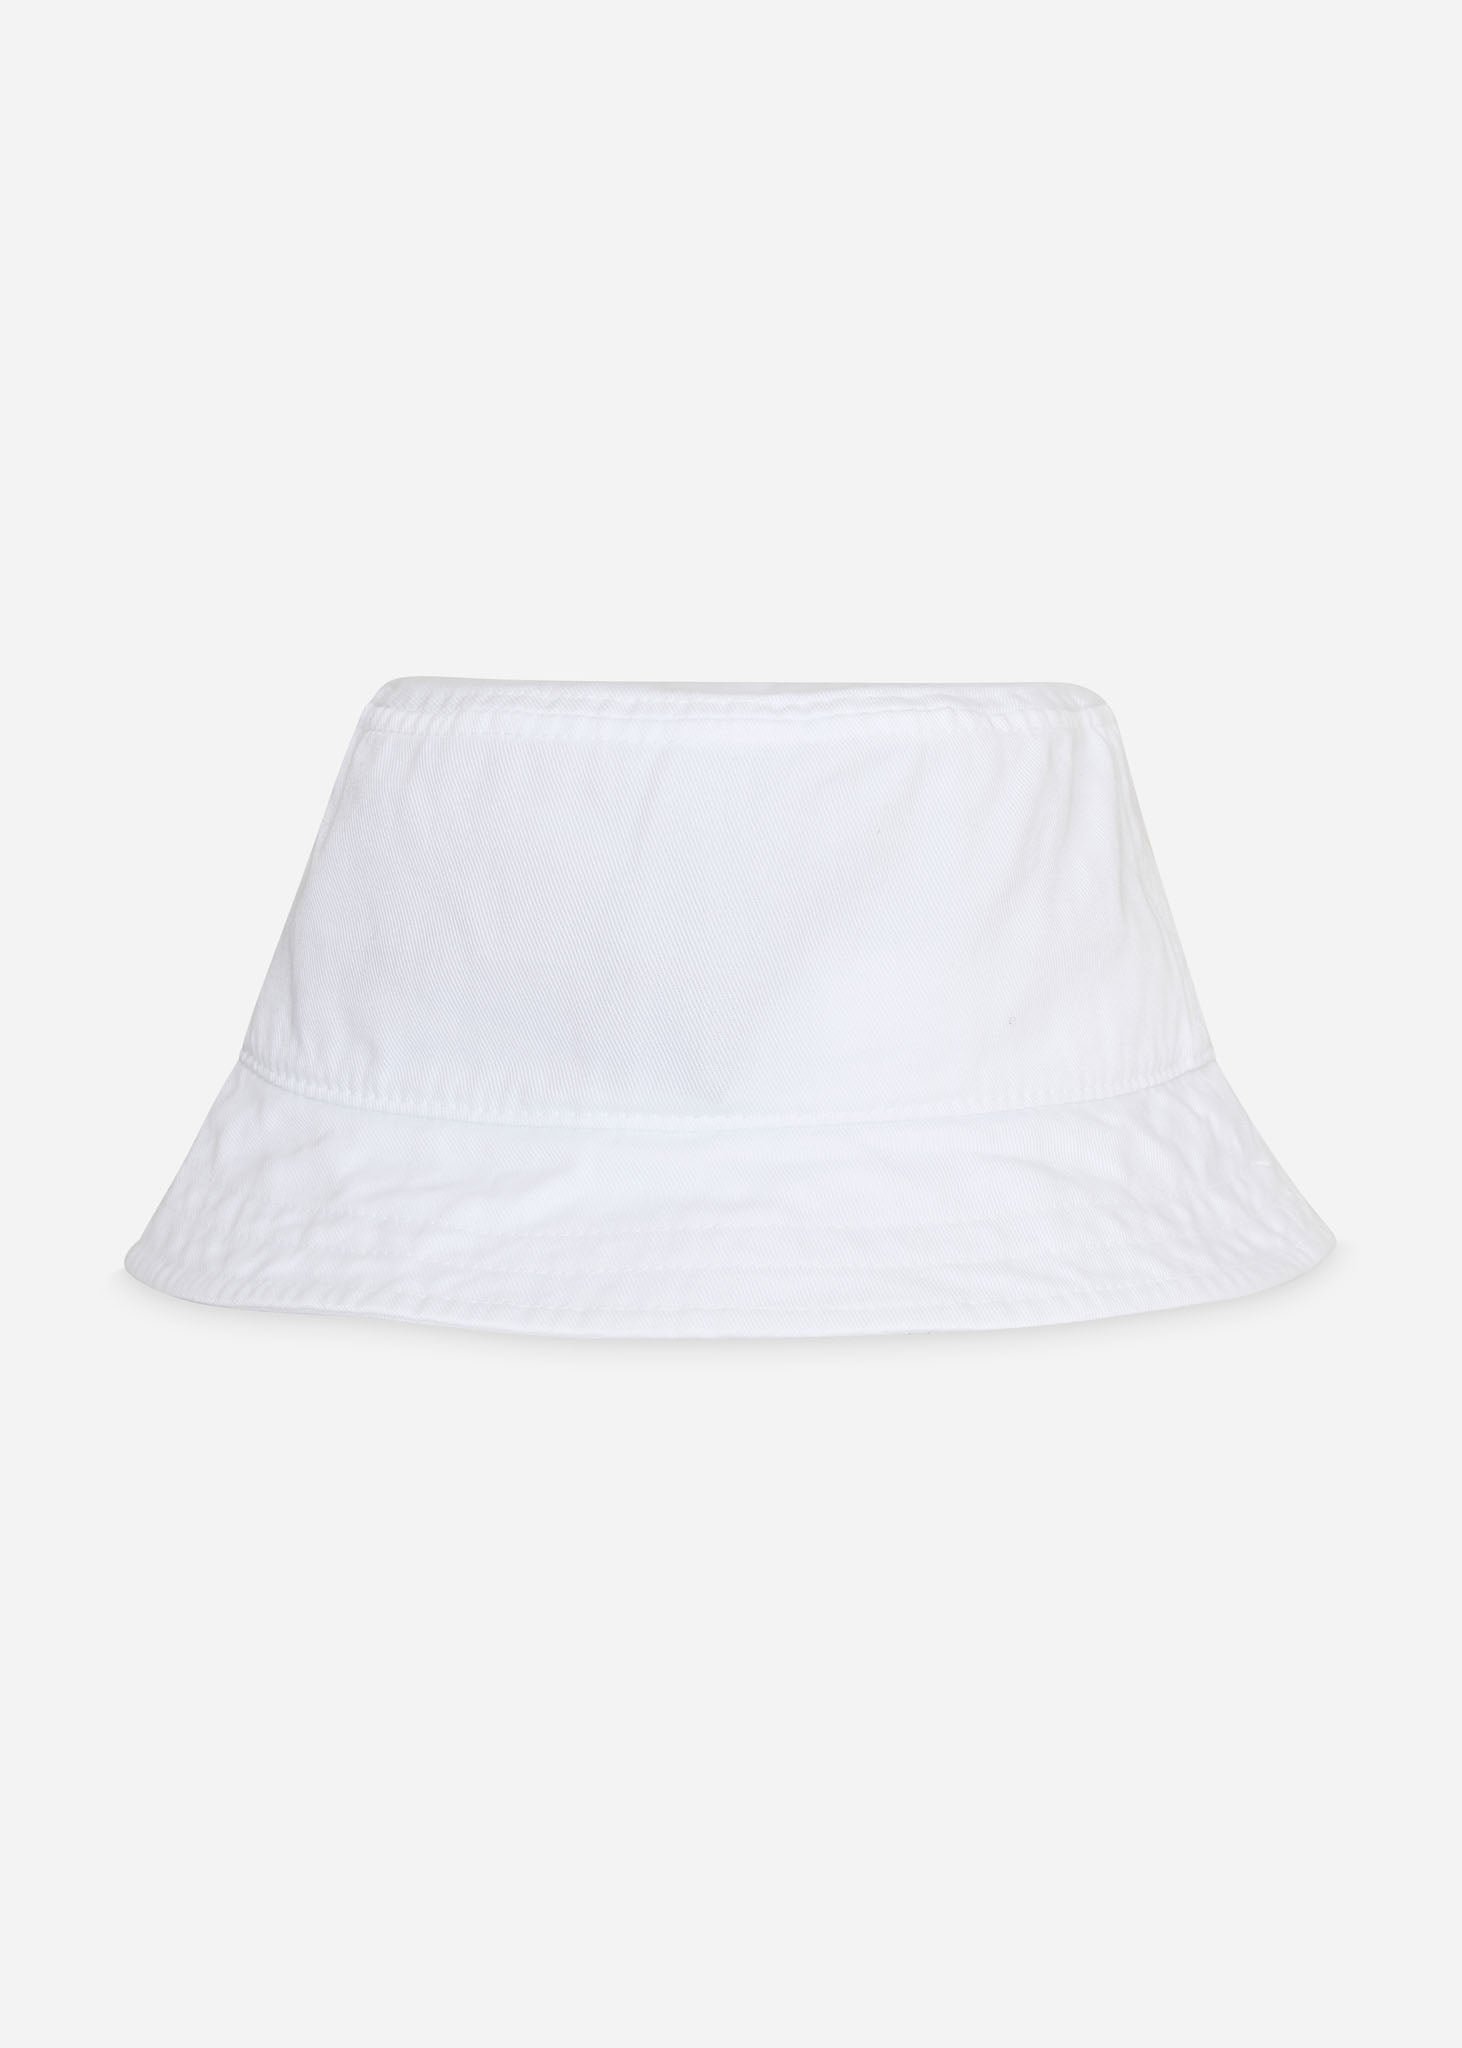 Lyle & Scott Bucket Hats  Cotton twill bucket hat - white 